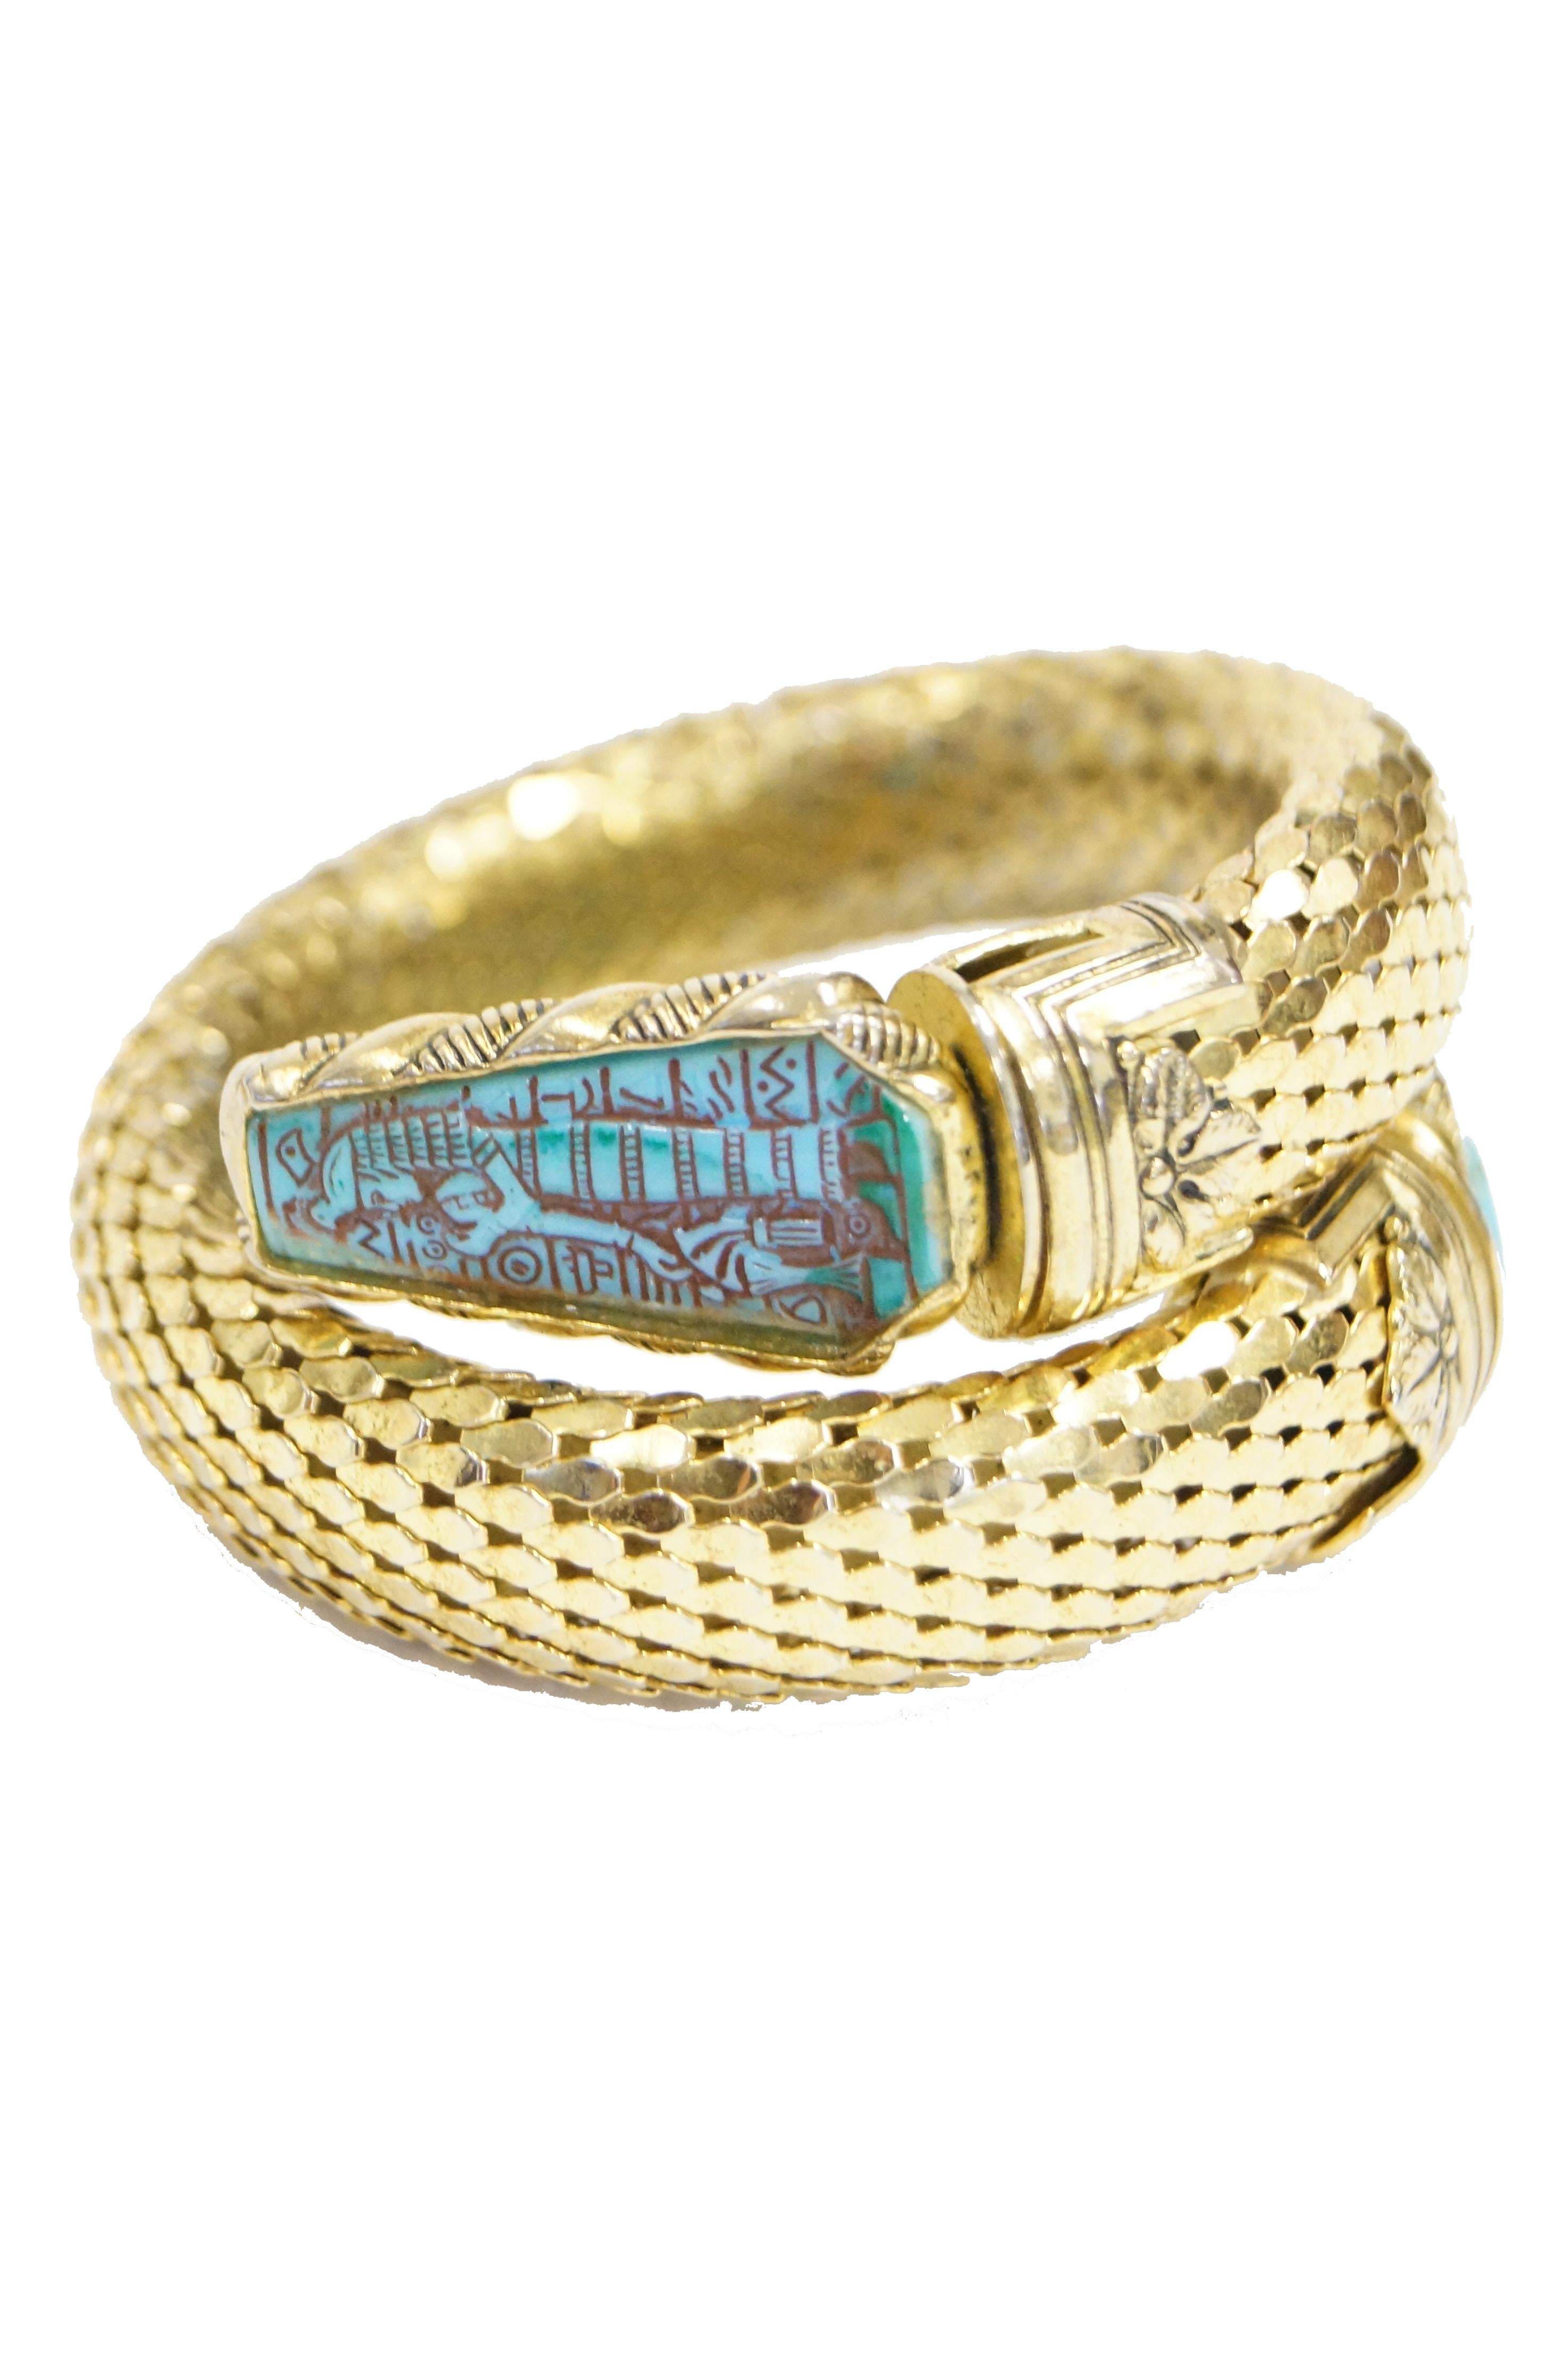 1970s Whiting & Davis Egyptian Revival Pharaoh Bracelet and Earrings For Sale 3